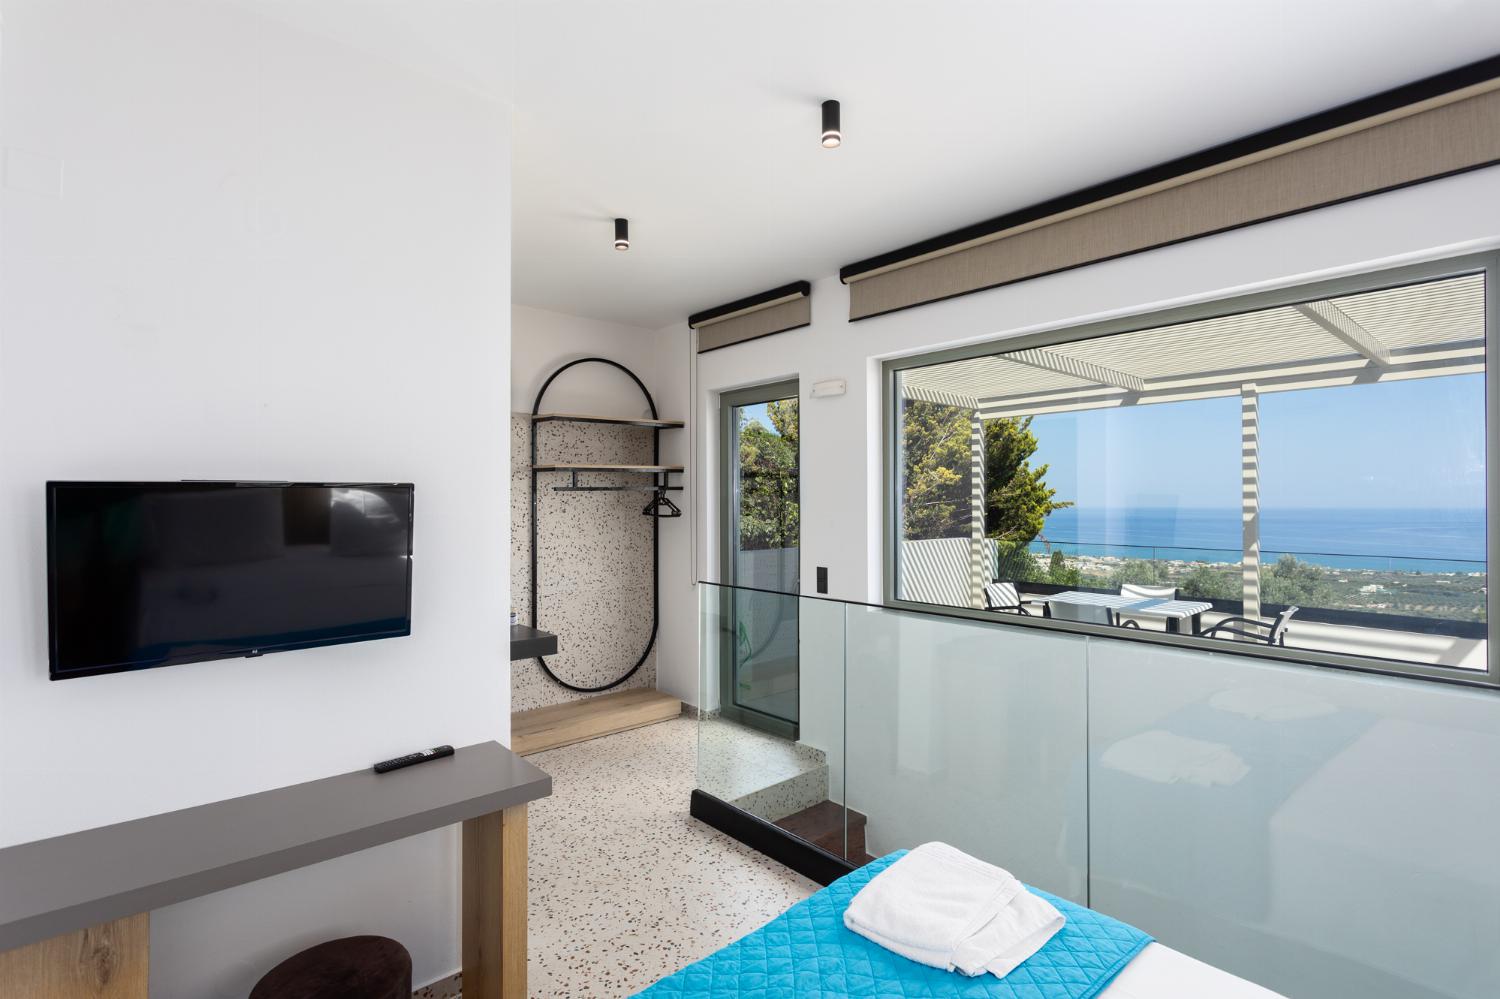 Double bedroom with en suite bathroom, A/C, TV, and sea views